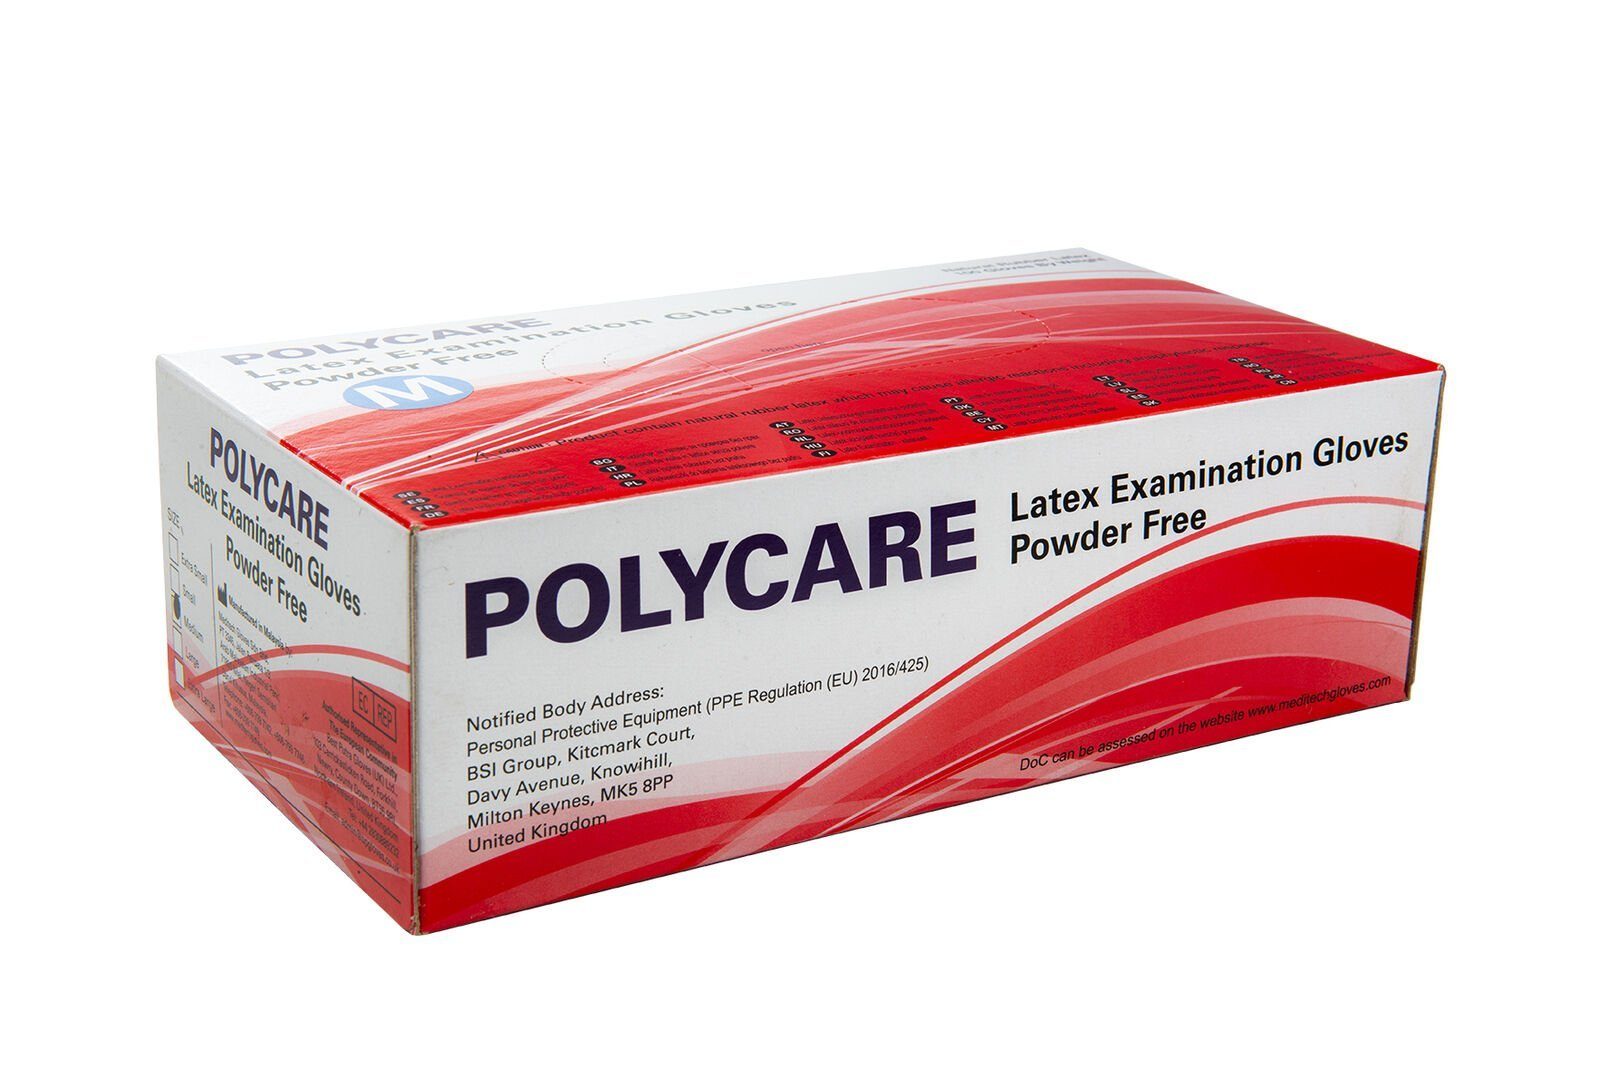 100 Stück Einweghandschuhe Polycare ungepudert - Latexhandschuhe Polycare